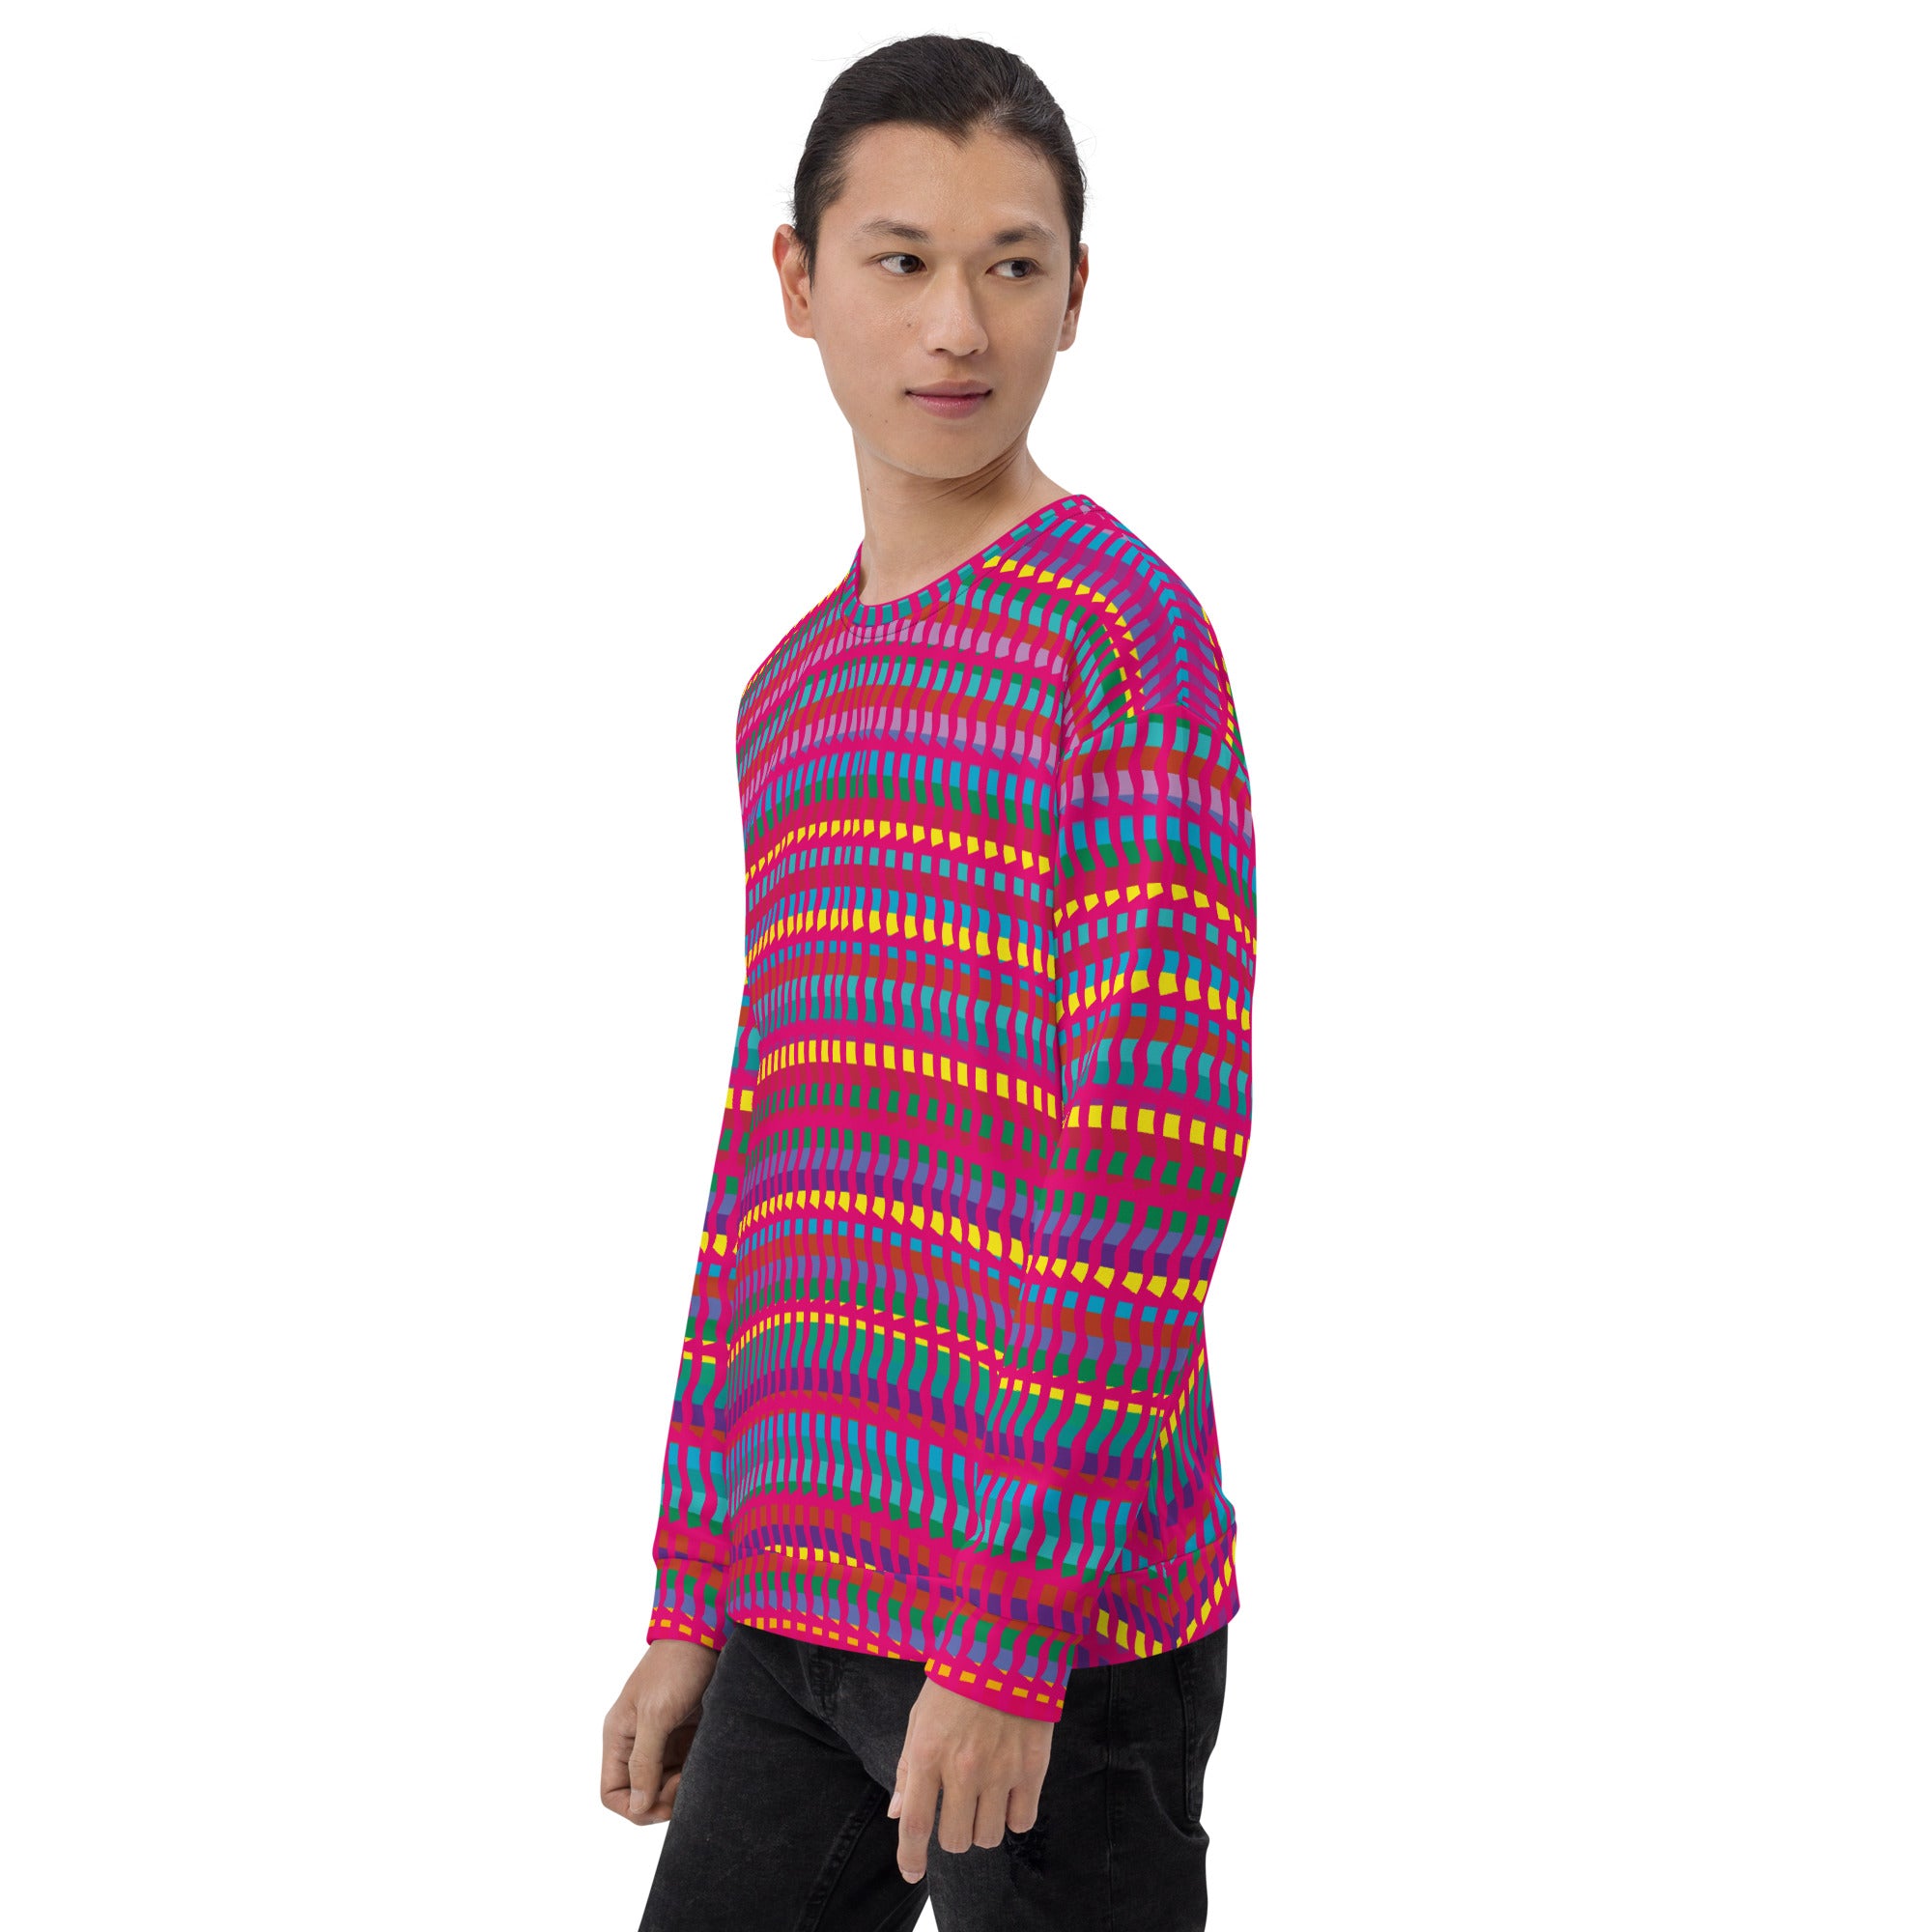 King's Cross Pattern 04 Unisex Sweatshirt